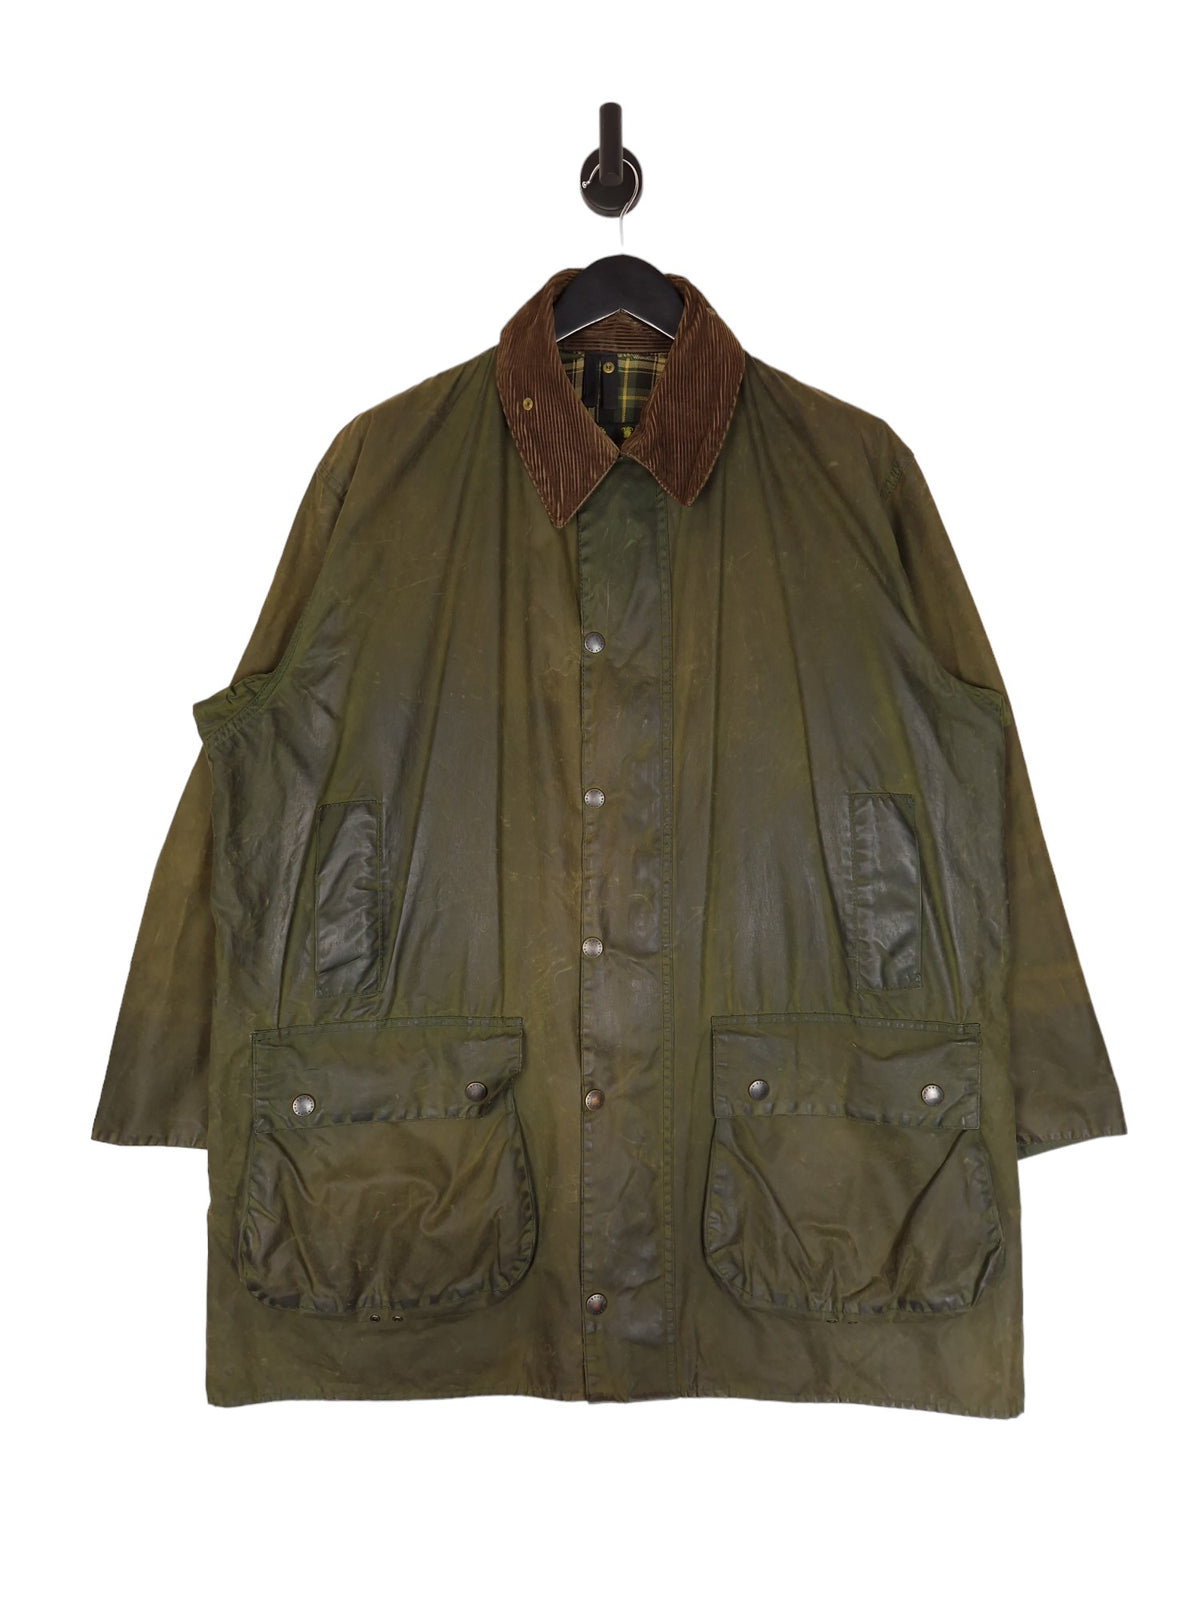 90's Barbour A200 Border Jacket Wax Cotton - Size XL